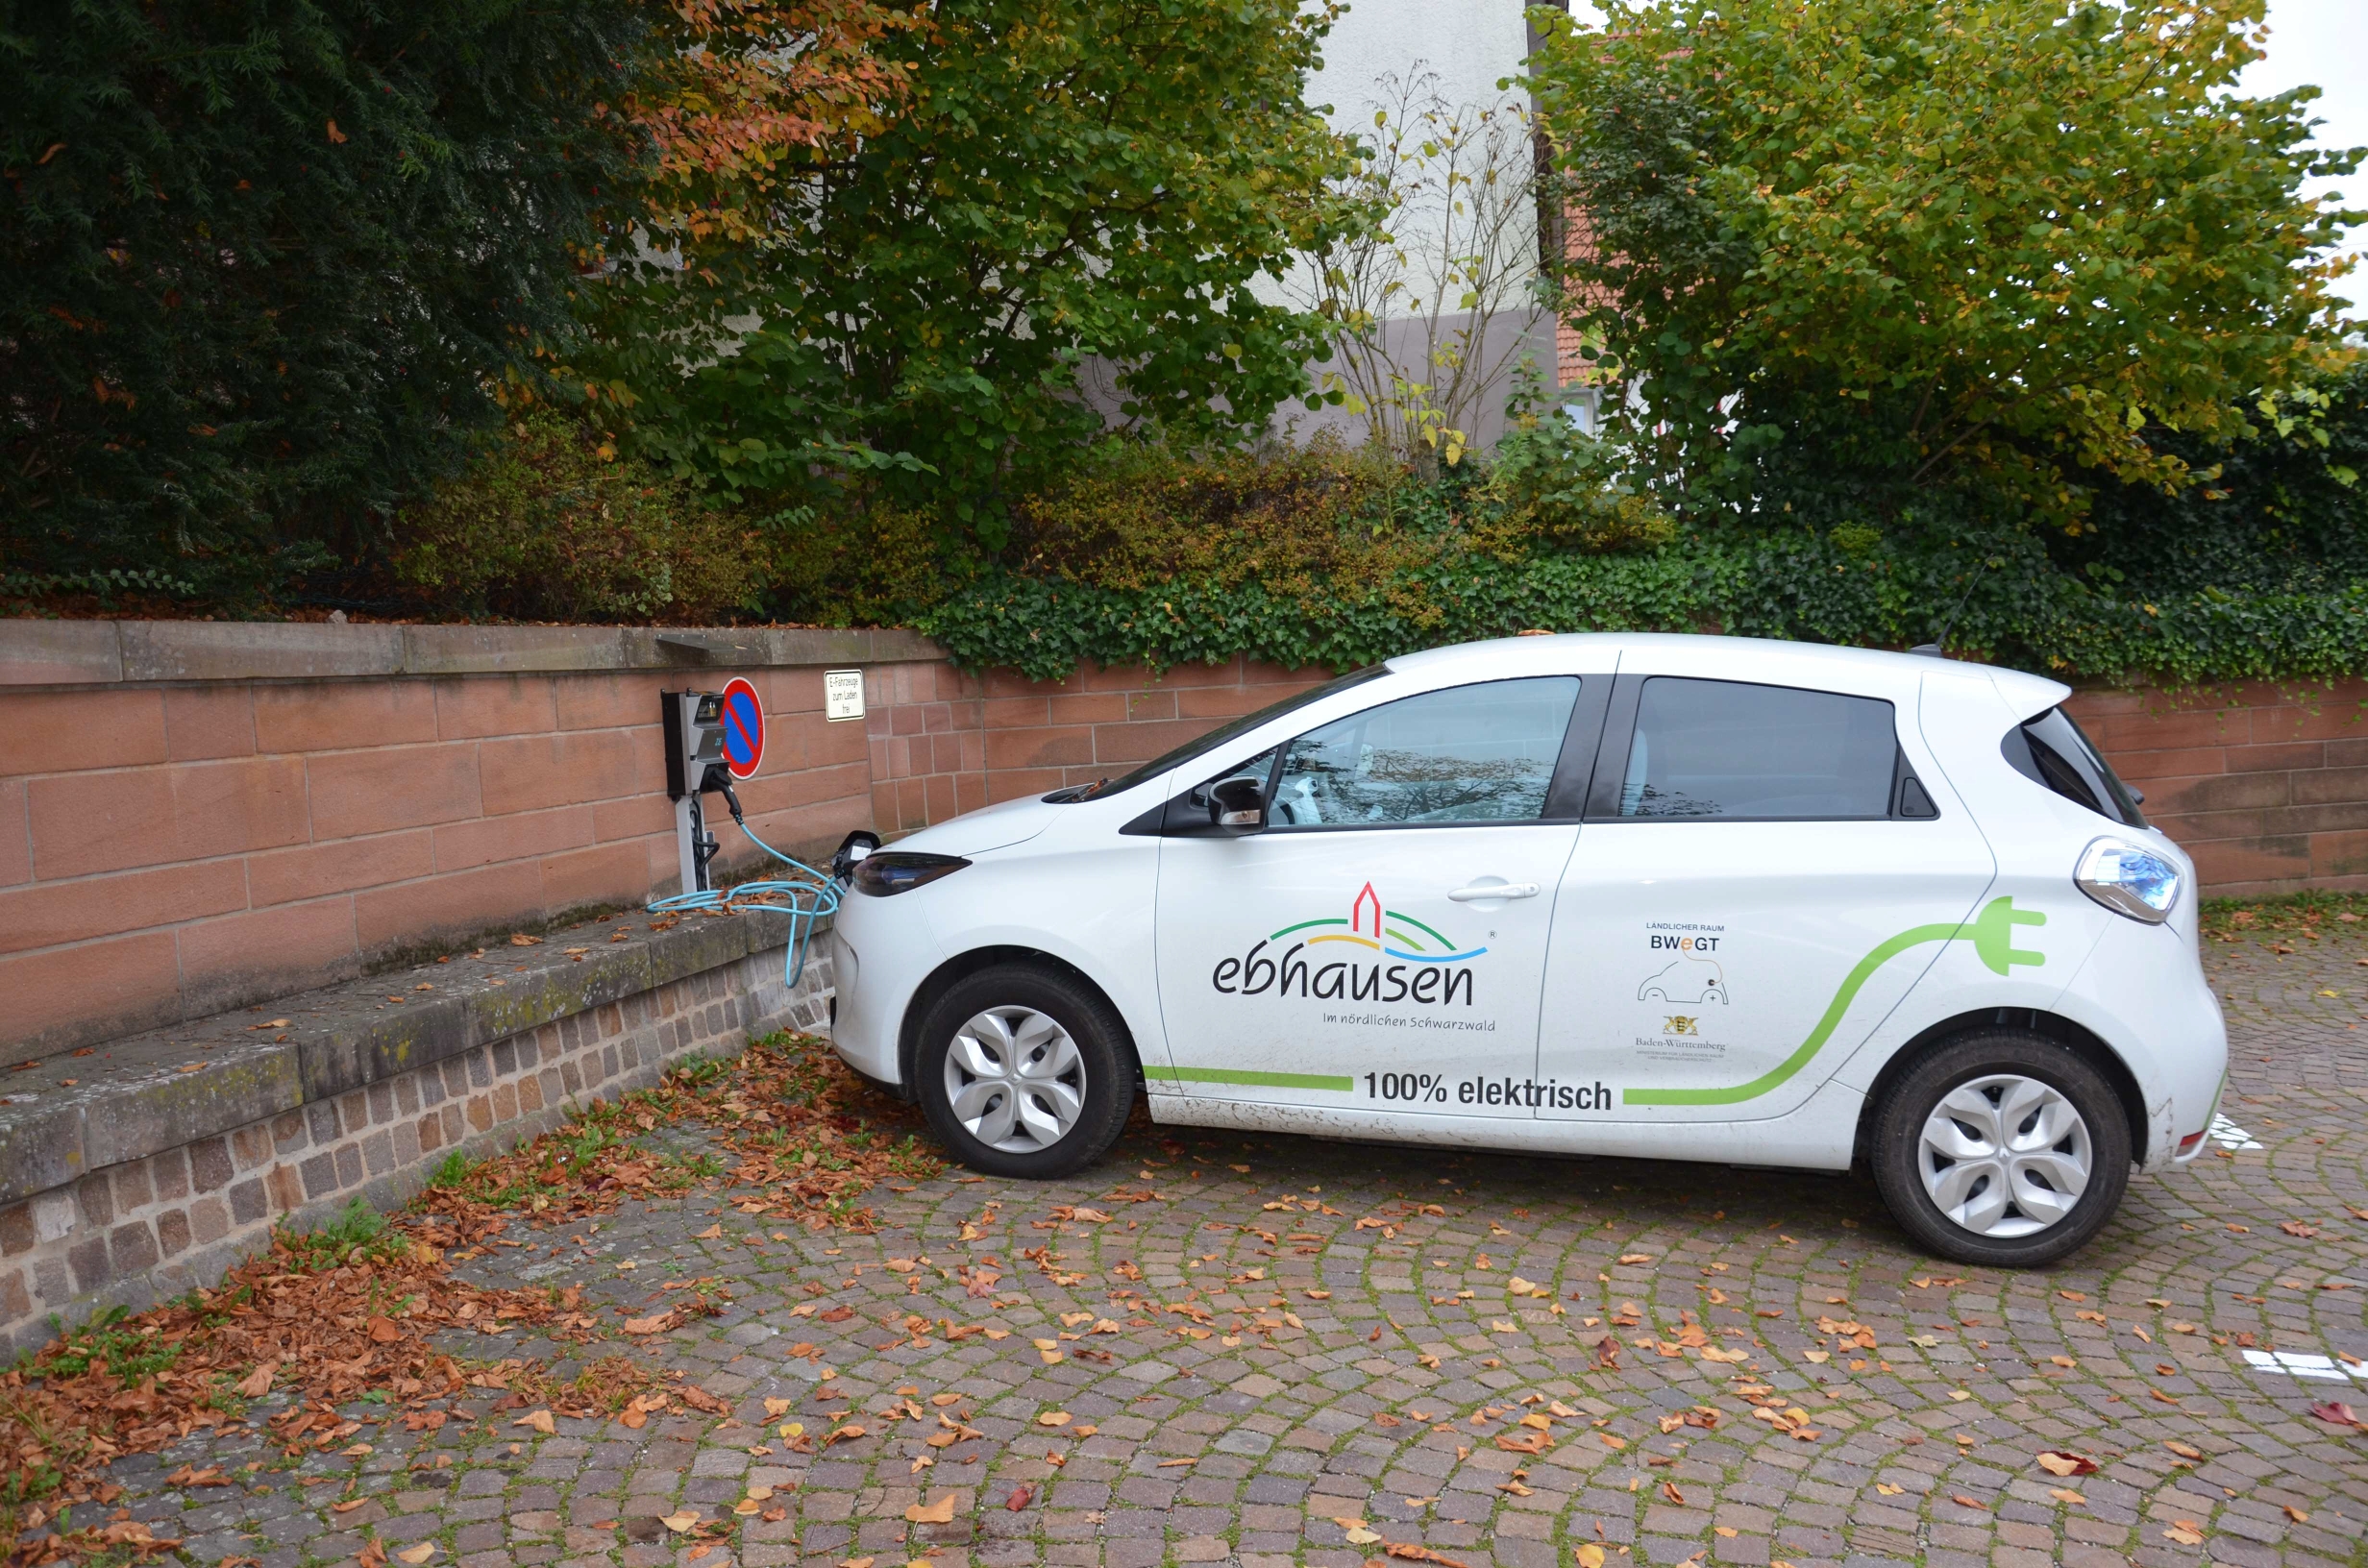 Elektro-Bürgerauto an der Ladestation in Ebhausen